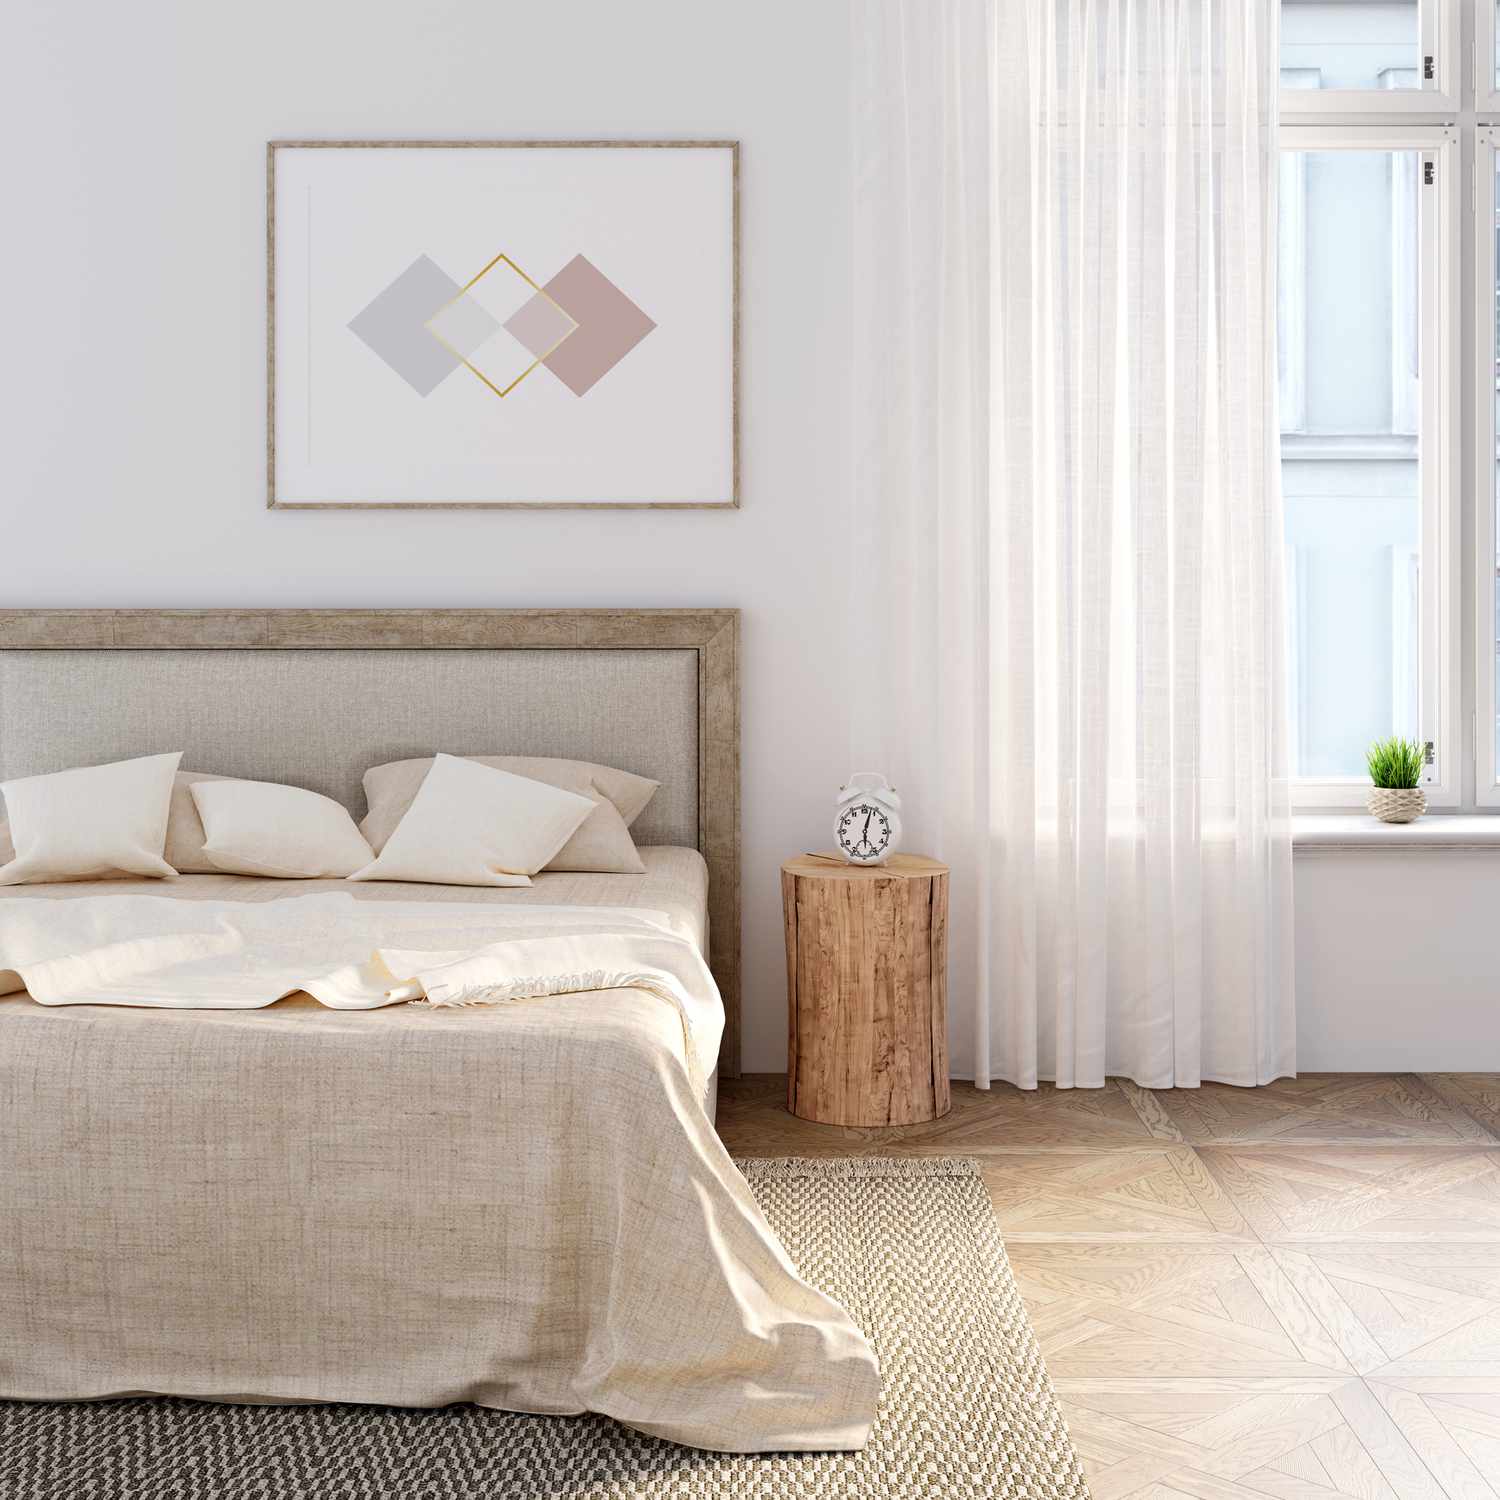 Weißes Schlafzimmer mit Naturleinen auf dem Bett, das horizontale Poster über dem Kopfteil. Ein Wecker steht auf einem Stumpf zwischen dem Bett und dem Fenster mit Leinenvorhang